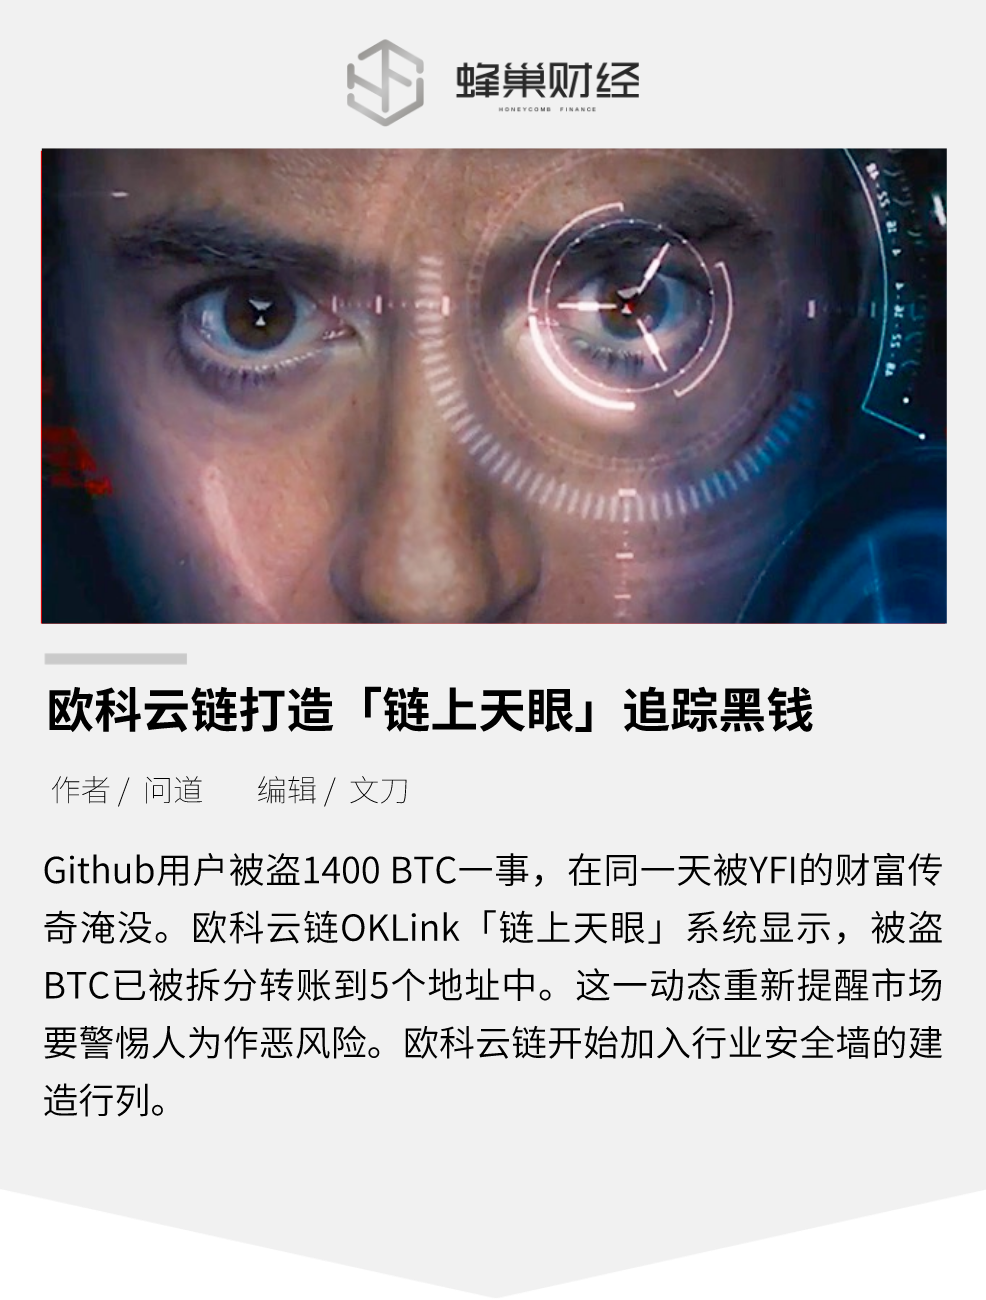 欧科云链打造 链上天眼 追踪黑钱 Fengchao666的博客 Csdn博客